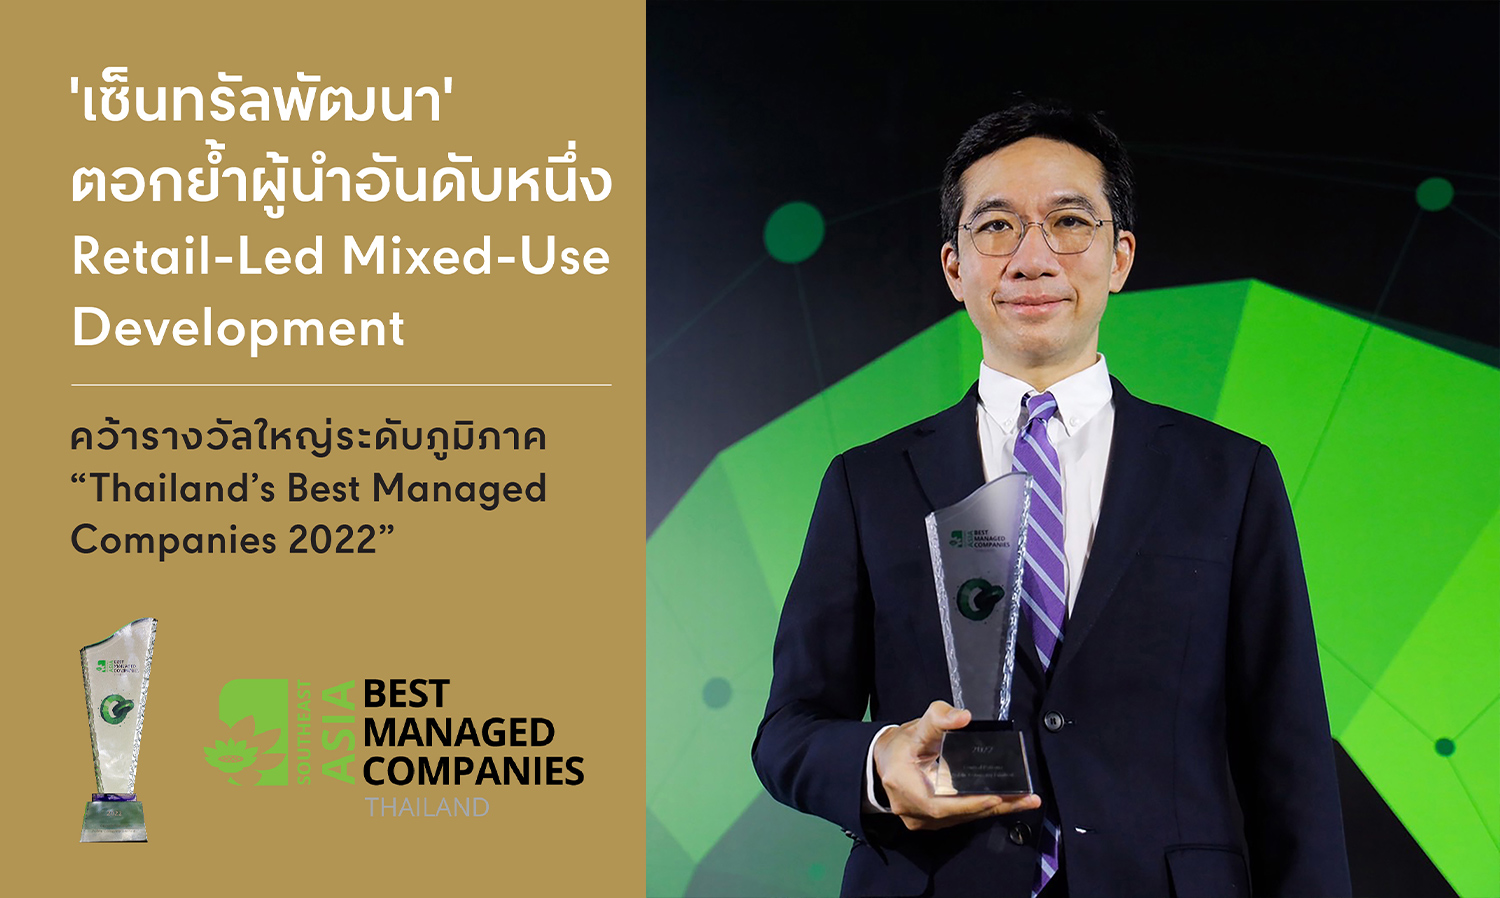 เซ็นทรัลพัฒนา เบอร์หนึ่งอสังหาริมทรัพย์ไทย คว้ารางวัลใหญ่ระดับภูมิภาค “Thailand’s Best Managed Companies 2022” ตอกย้ำผู้นำ Retail-Led Mixed-Use Development